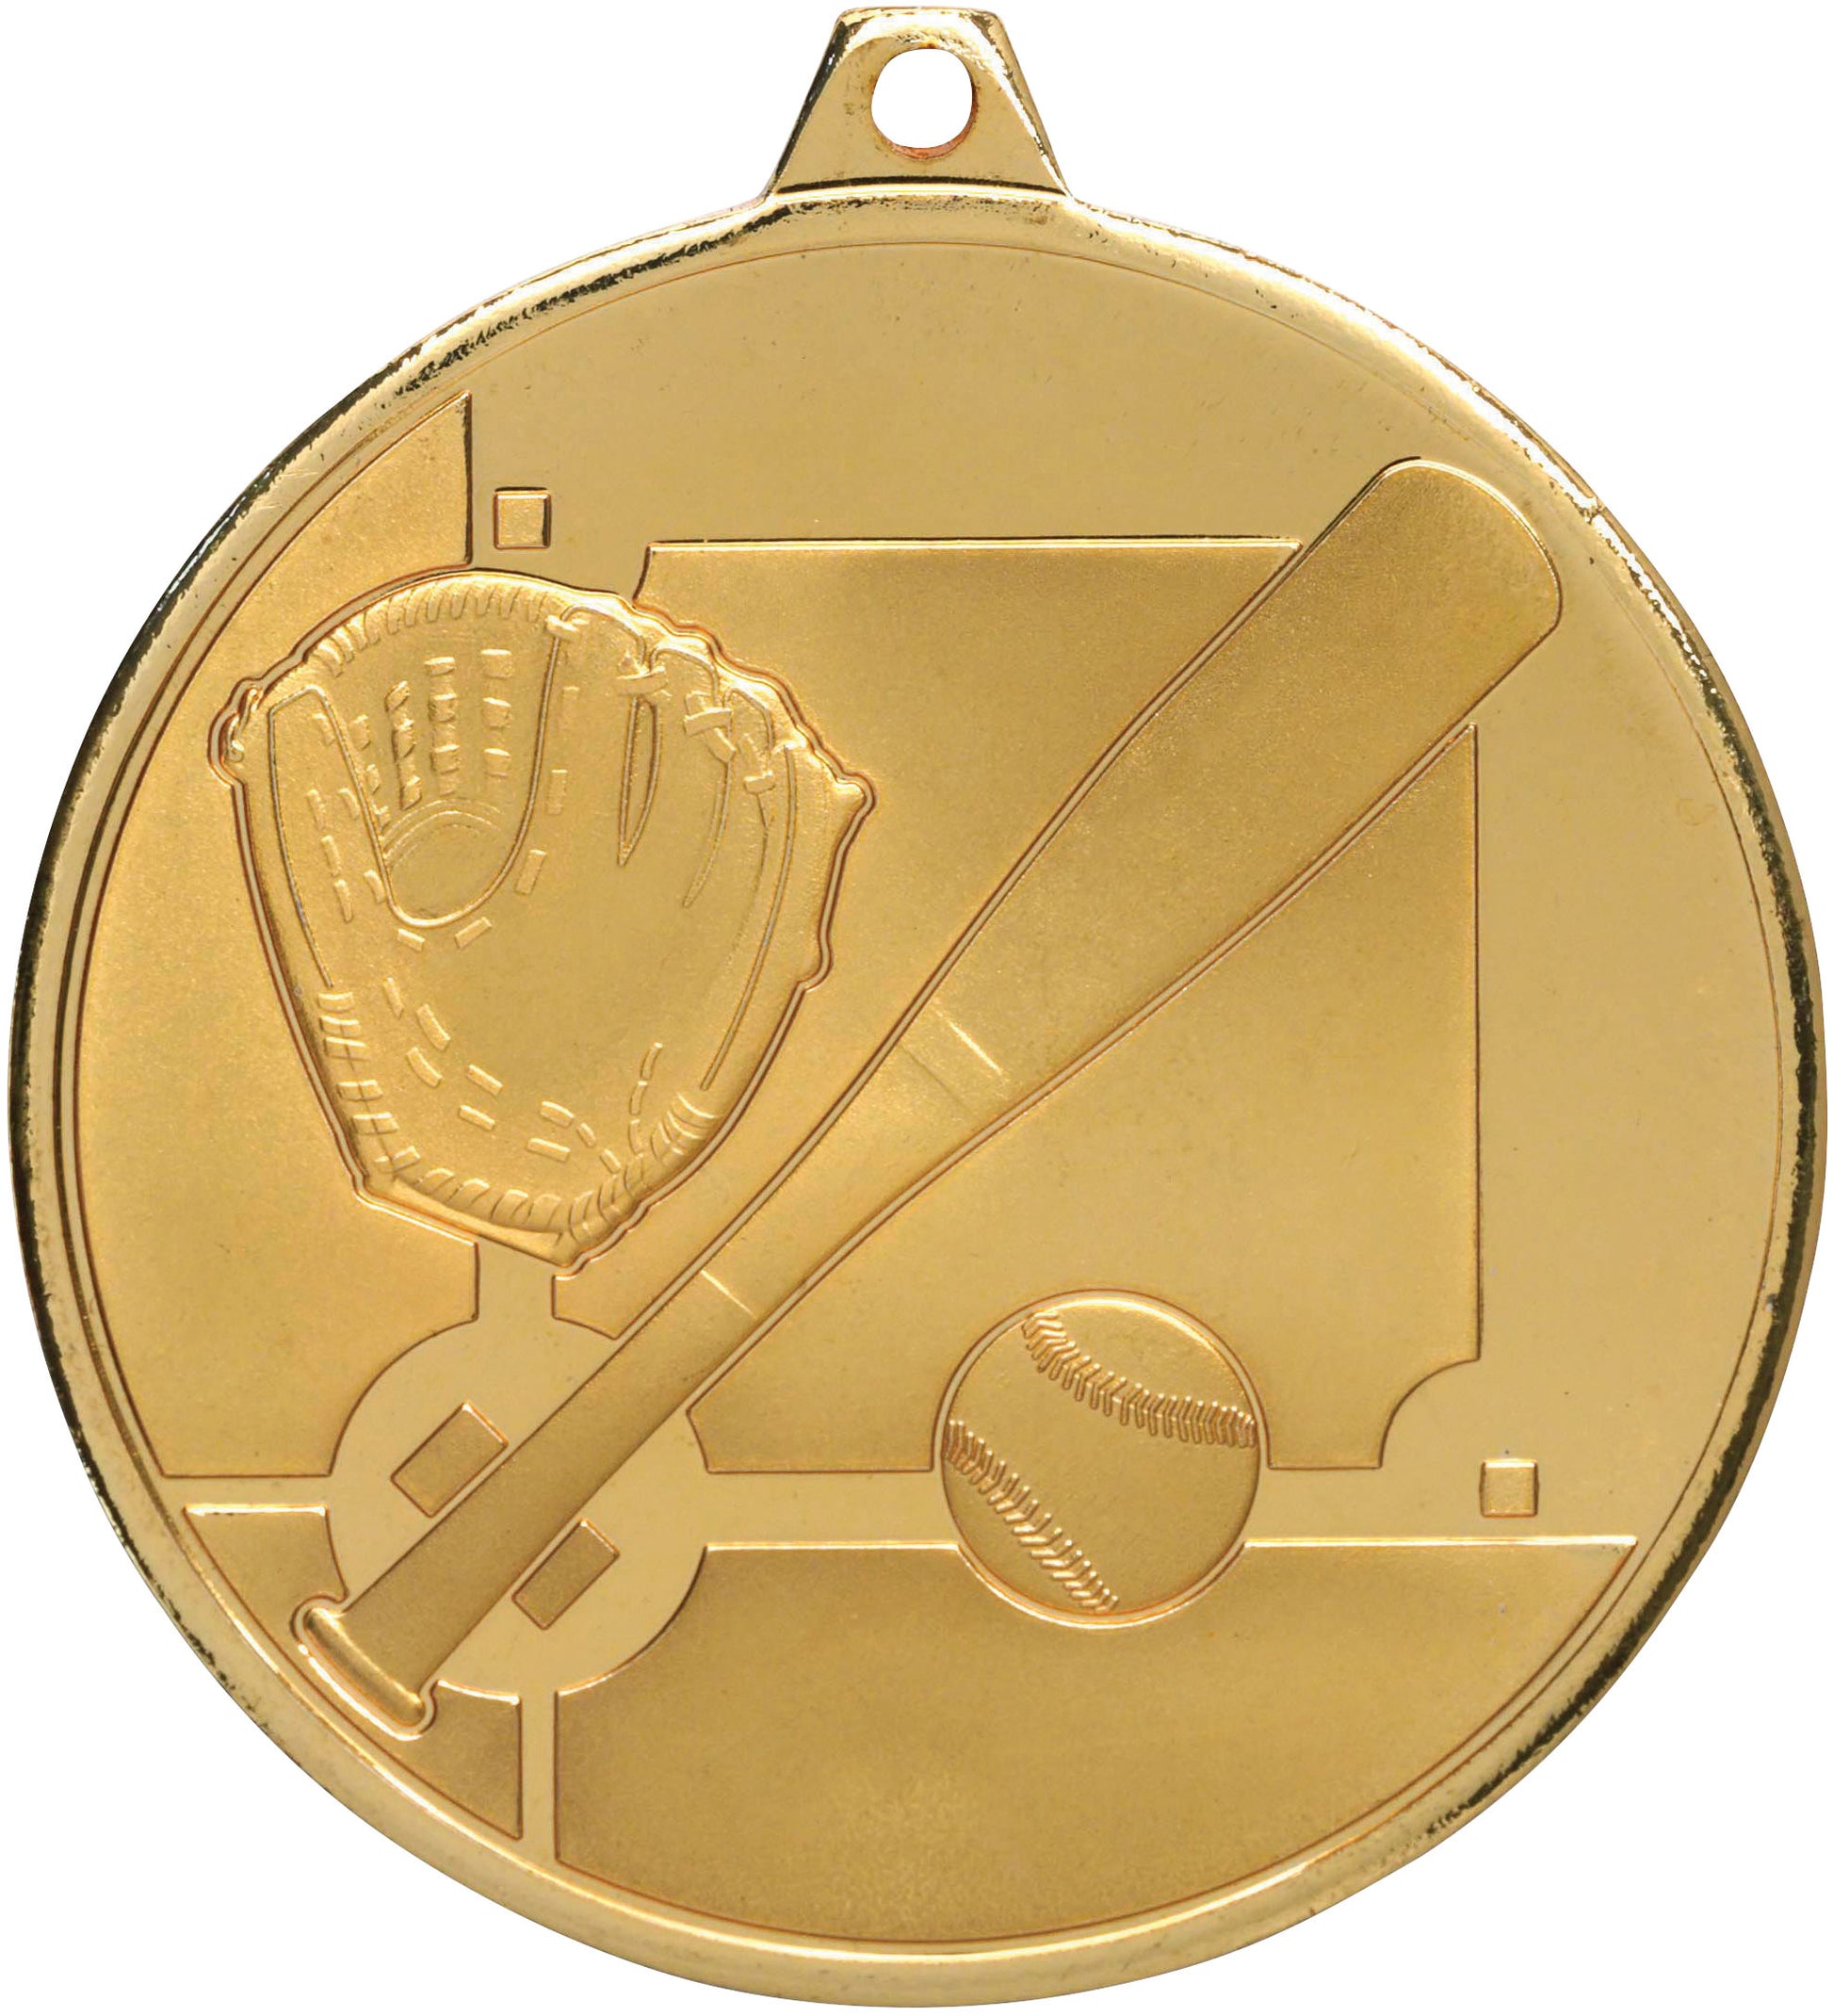 MZ903 Baseball / Softball Medal